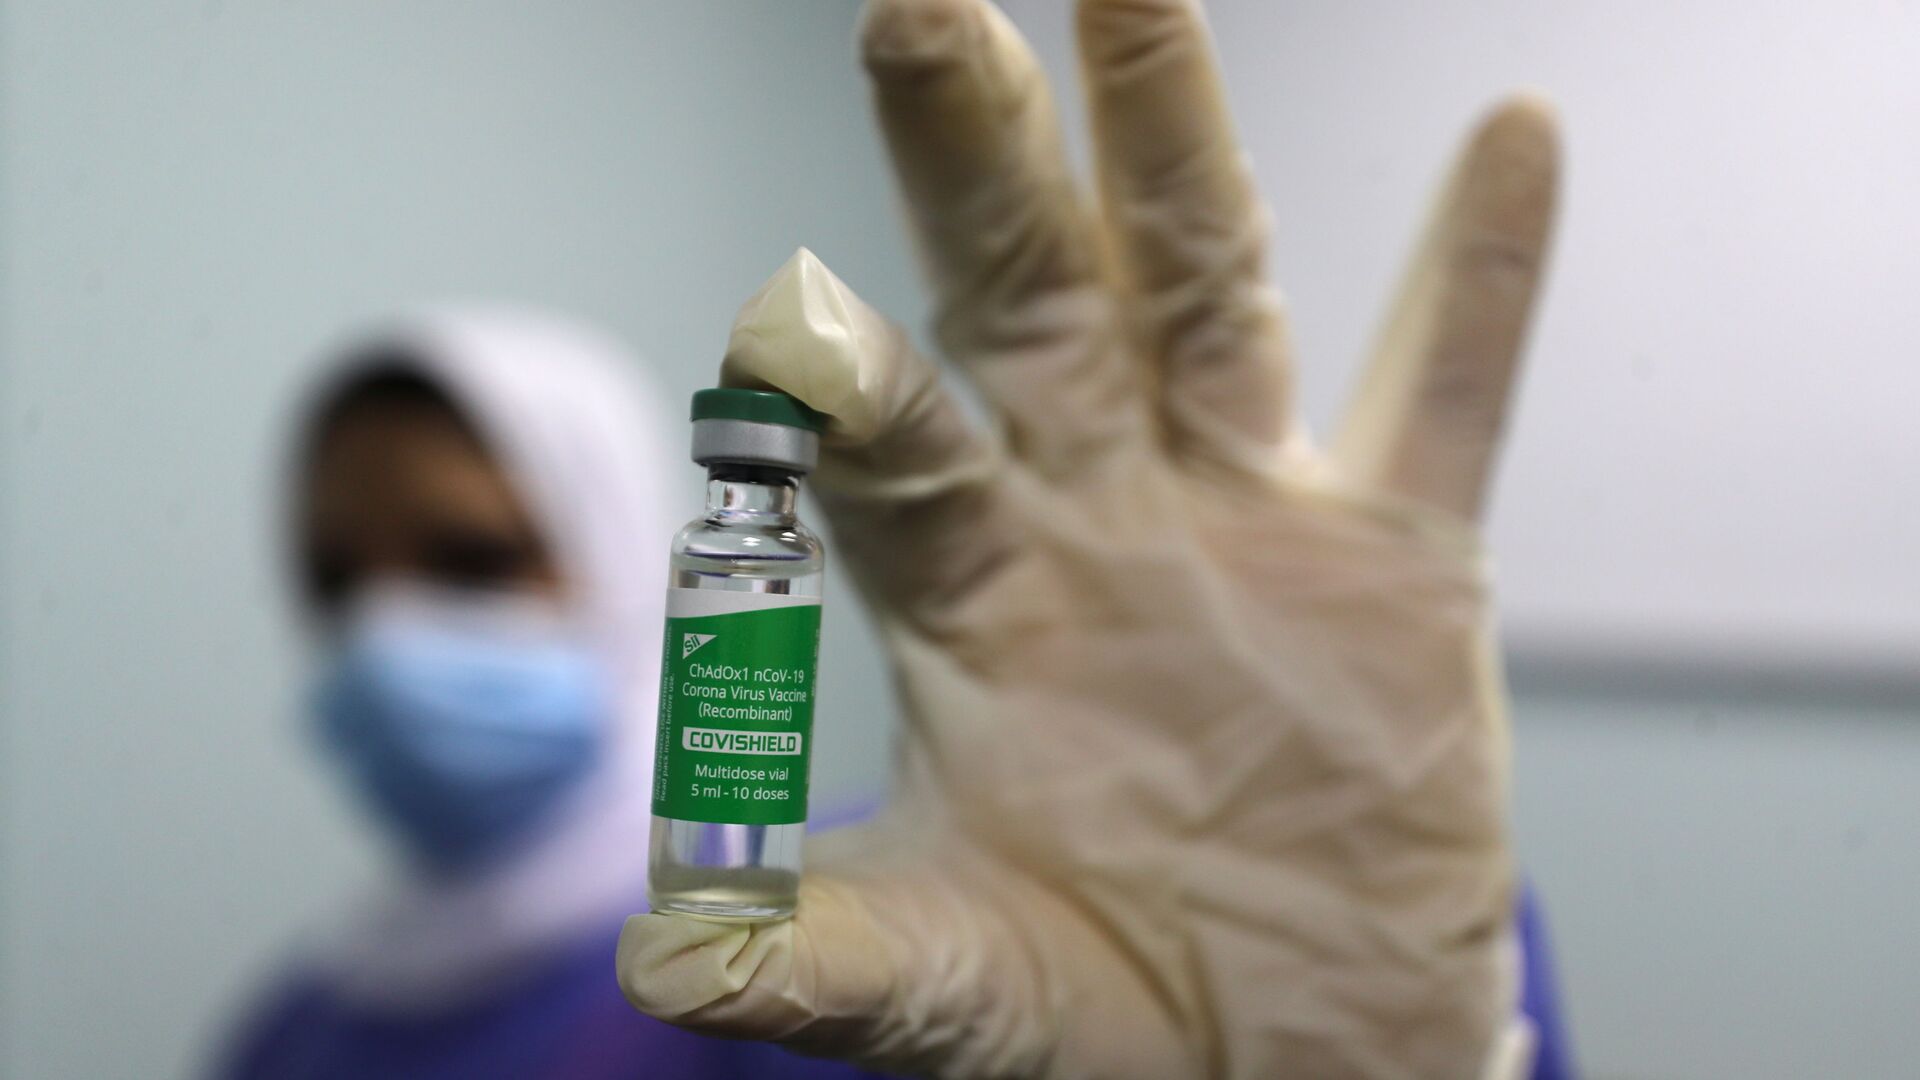 بدء تطعيم واسع النطاق في مصر ضد فيروس كورونا (كوفيد-19)، القاهرة، 4 مارس 2021 - سبوتنيك عربي, 1920, 13.11.2021